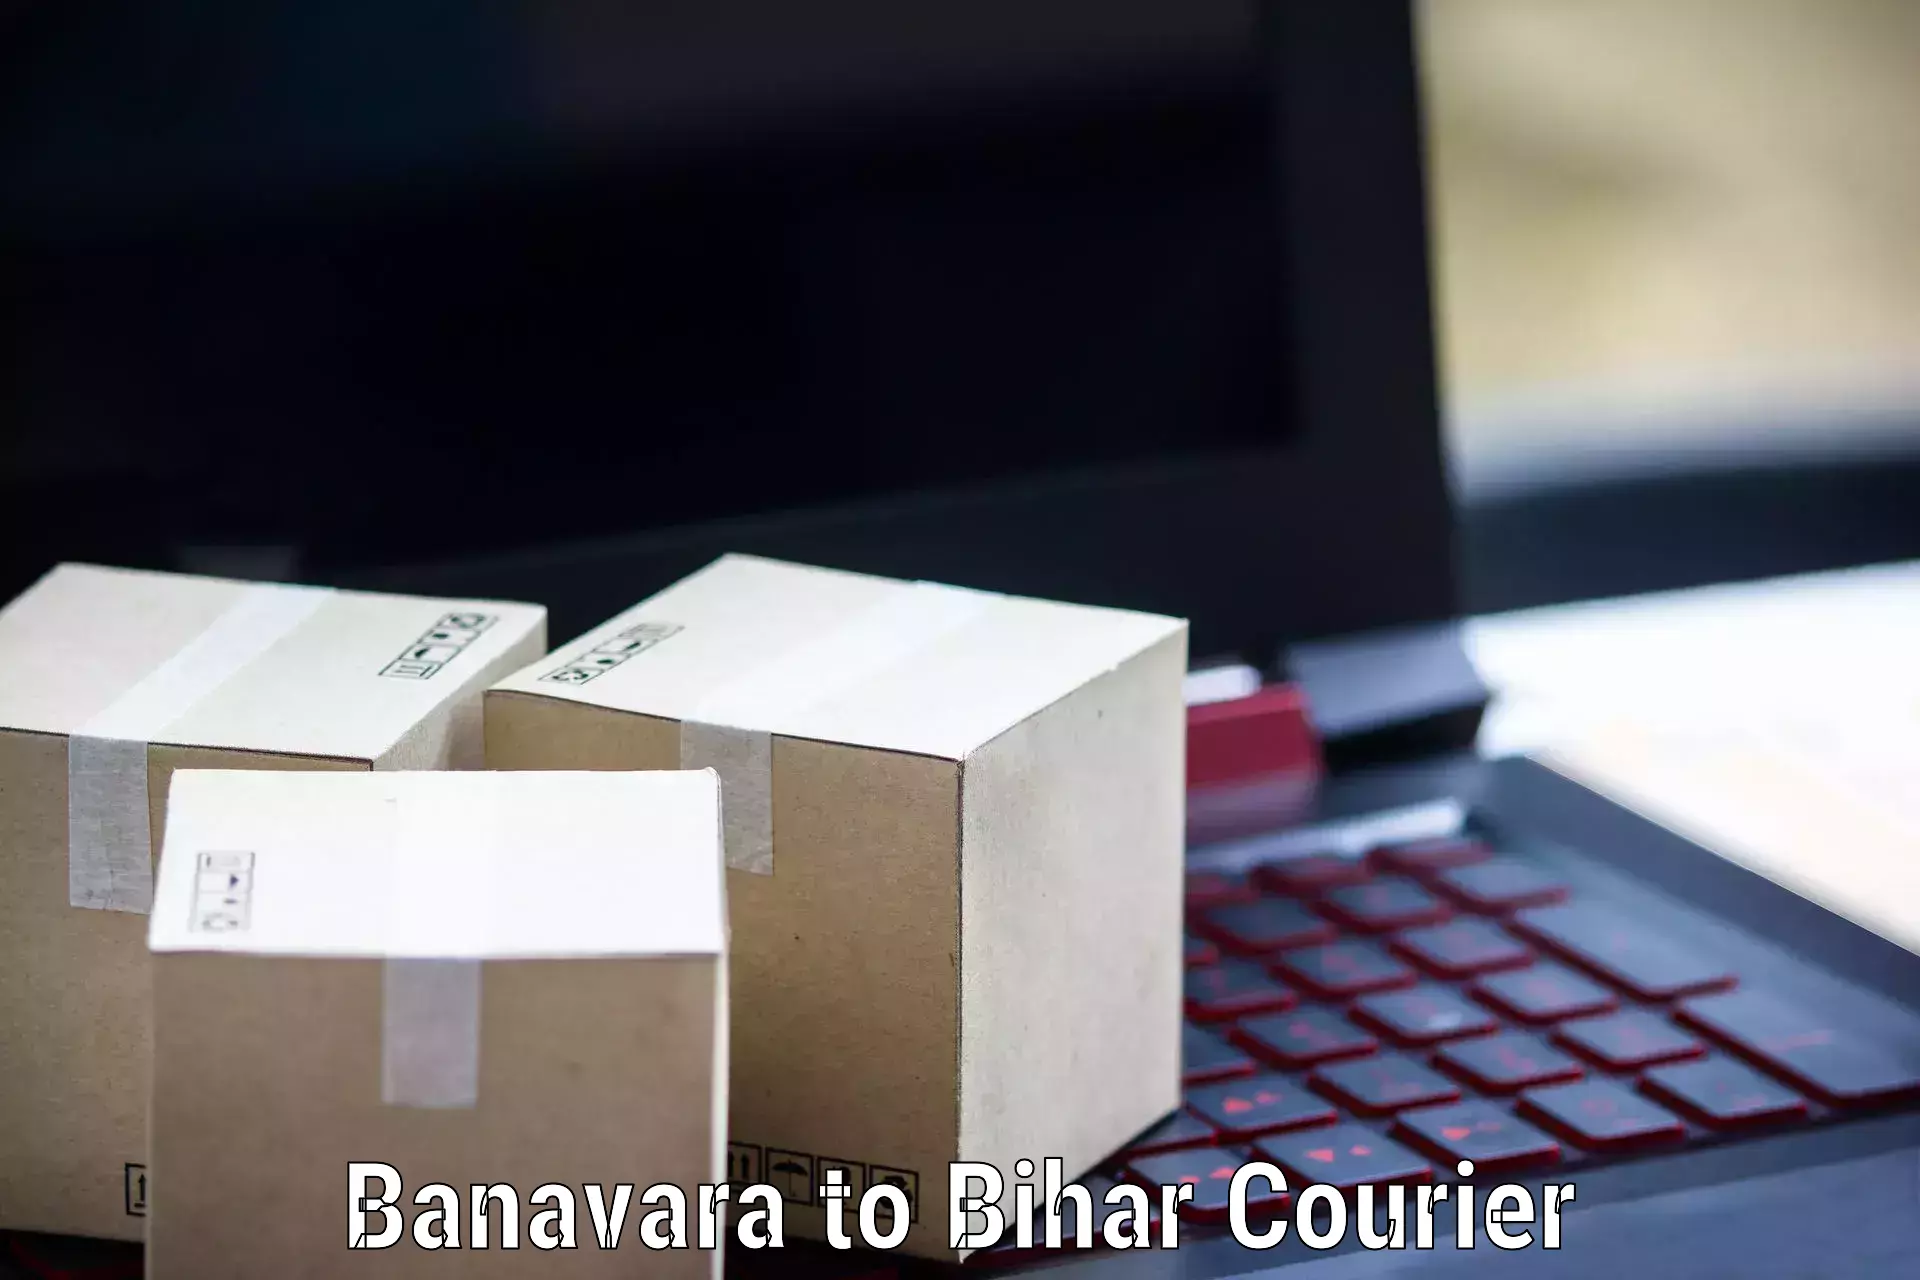 Comprehensive shipping network Banavara to Muzaffarpur